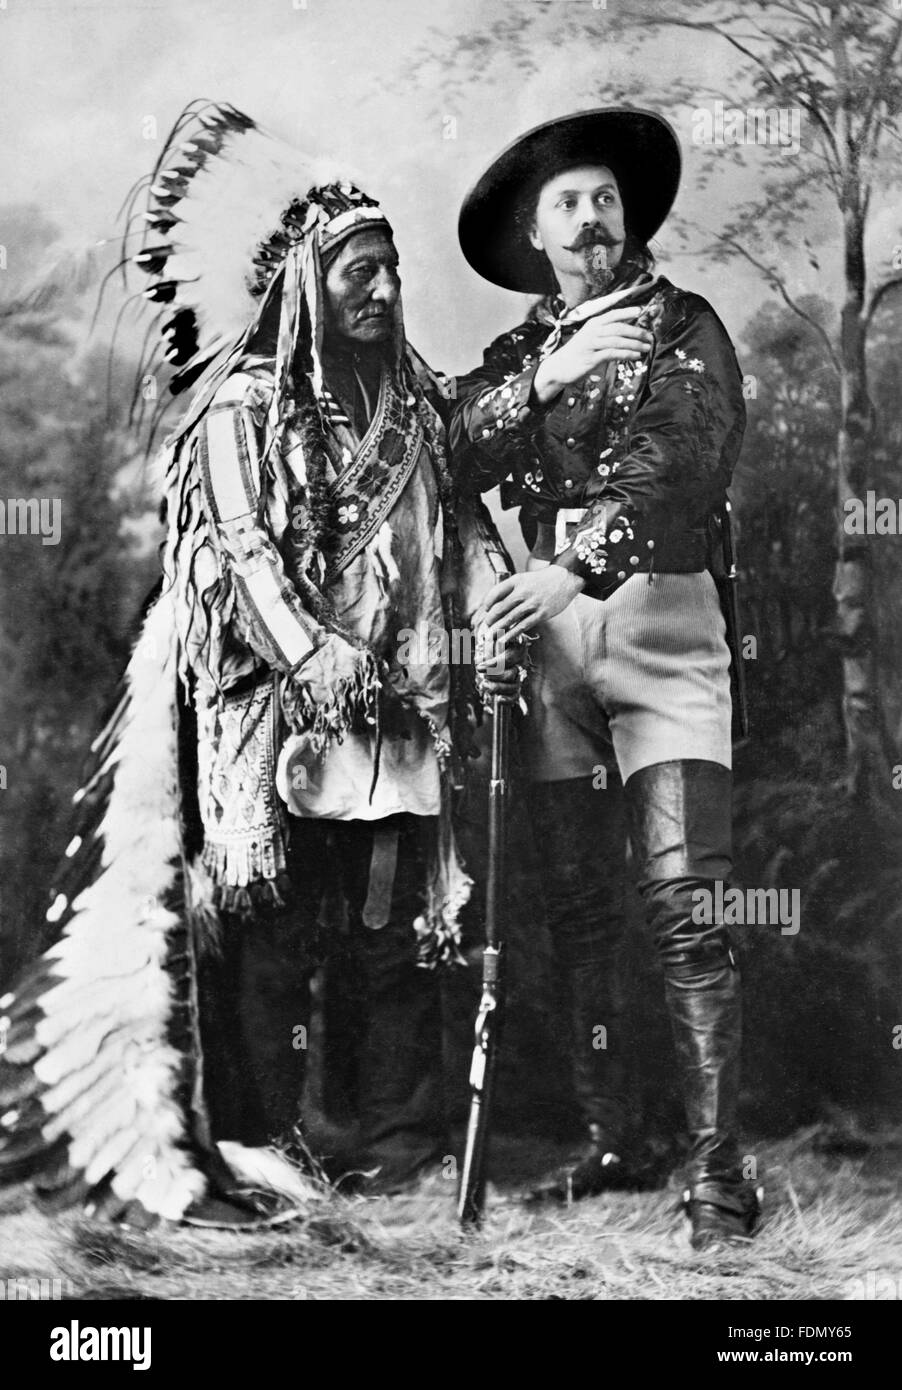 Buffalo Bill Wild West Show. Sitting Bull, ein Hunkpapa Lakota heiliger Mann und ein Führer, weitgehend verantwortlich für die Niederlage von General Custer am Little Bighorn mit der Showman, Buffalo Bill Cody. Foto c.1885 Stockfoto